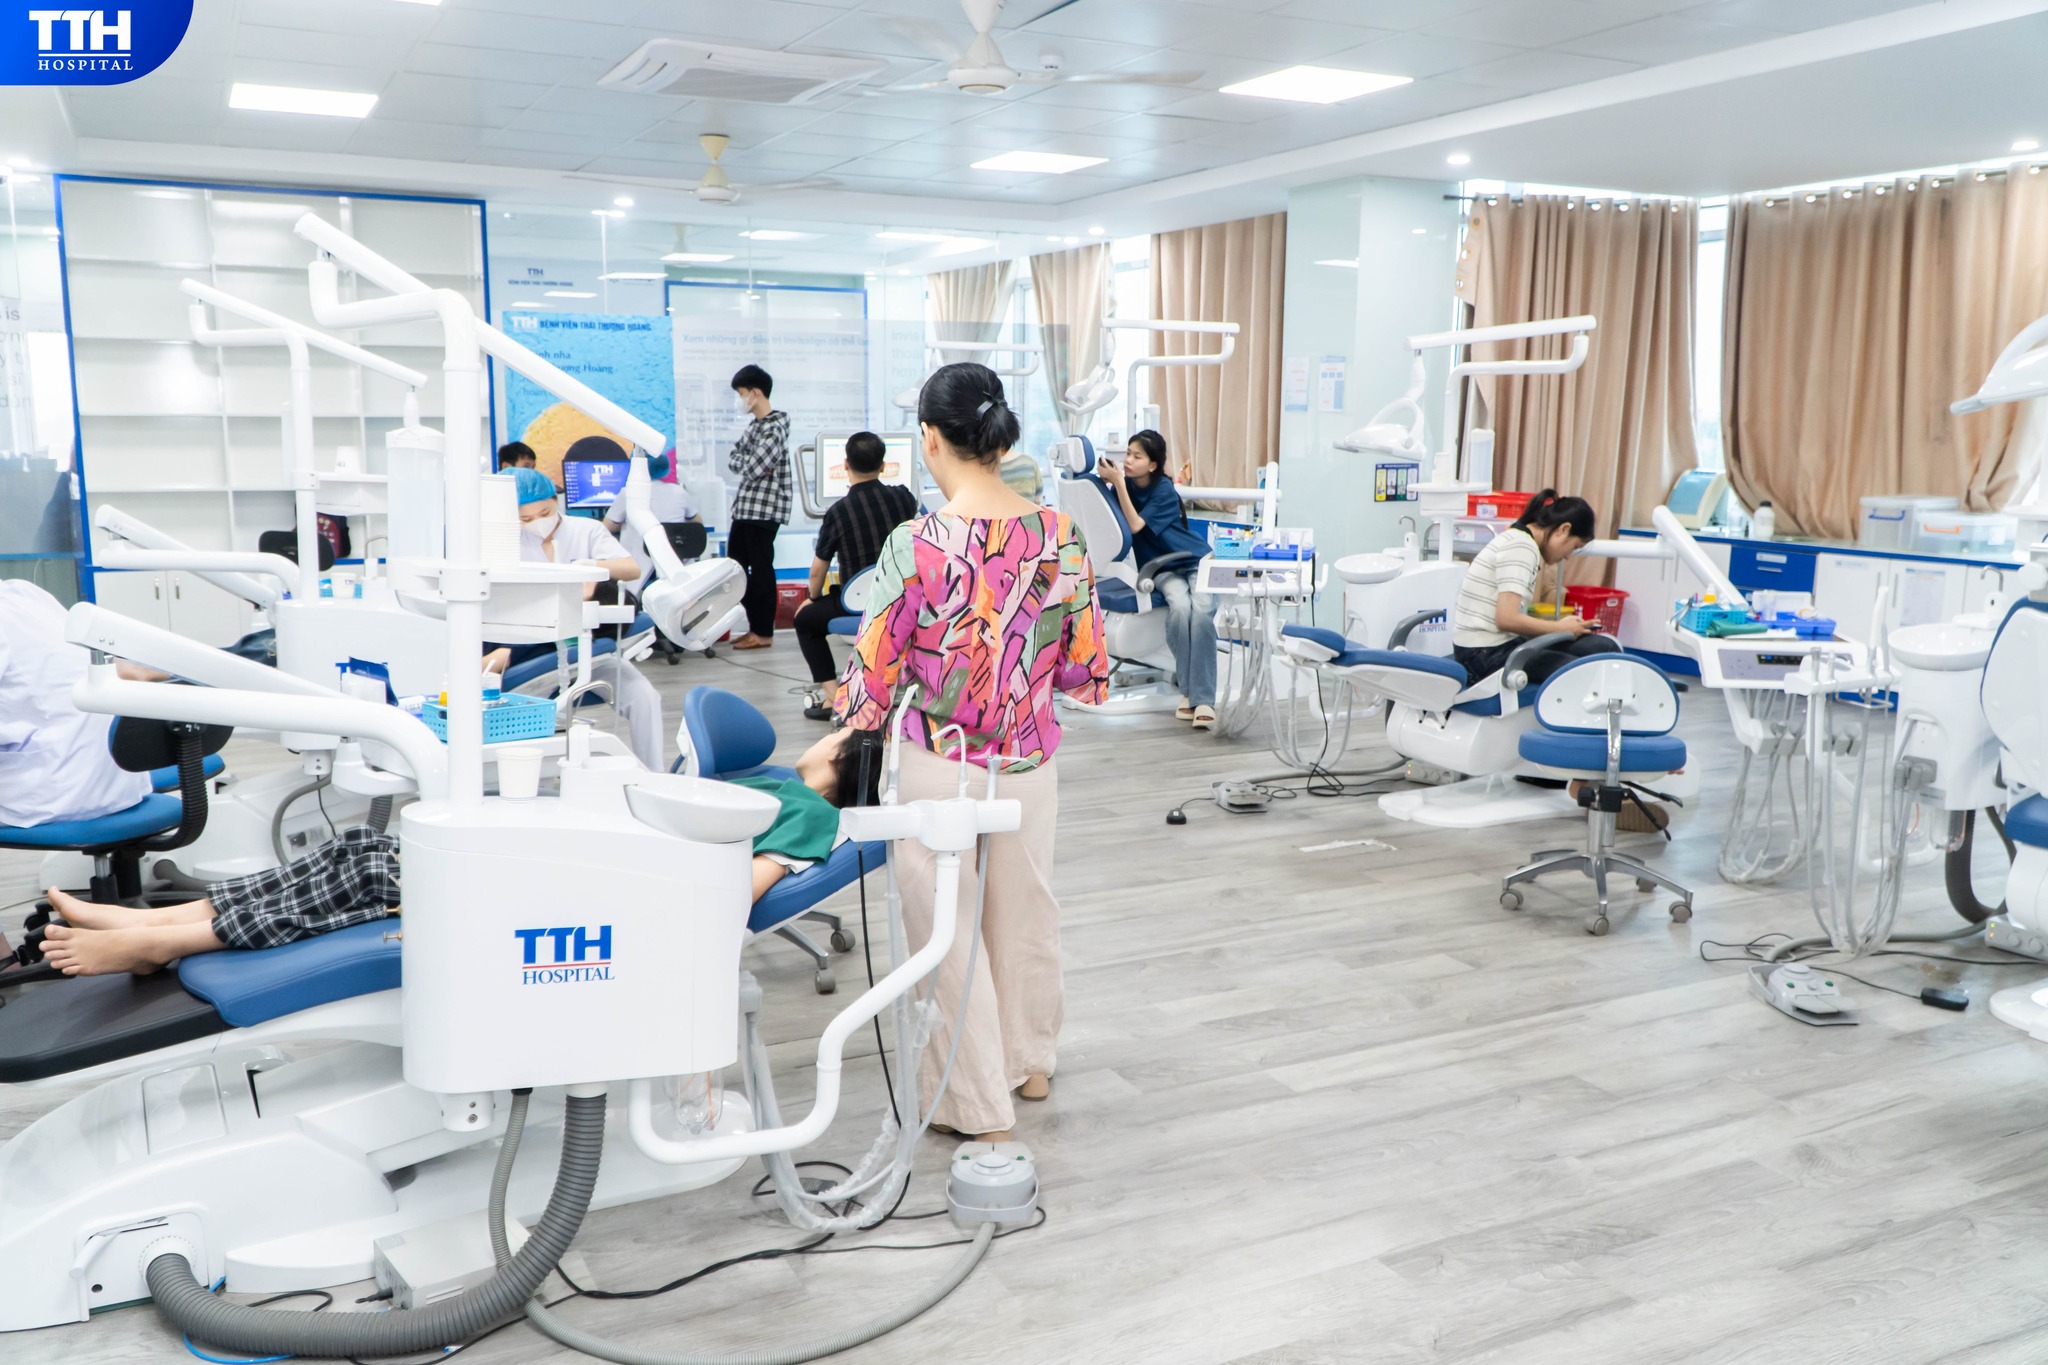 Dịch vụ nha khoa tại Bệnh viện Thái Thượng Hoàng ảnh 1